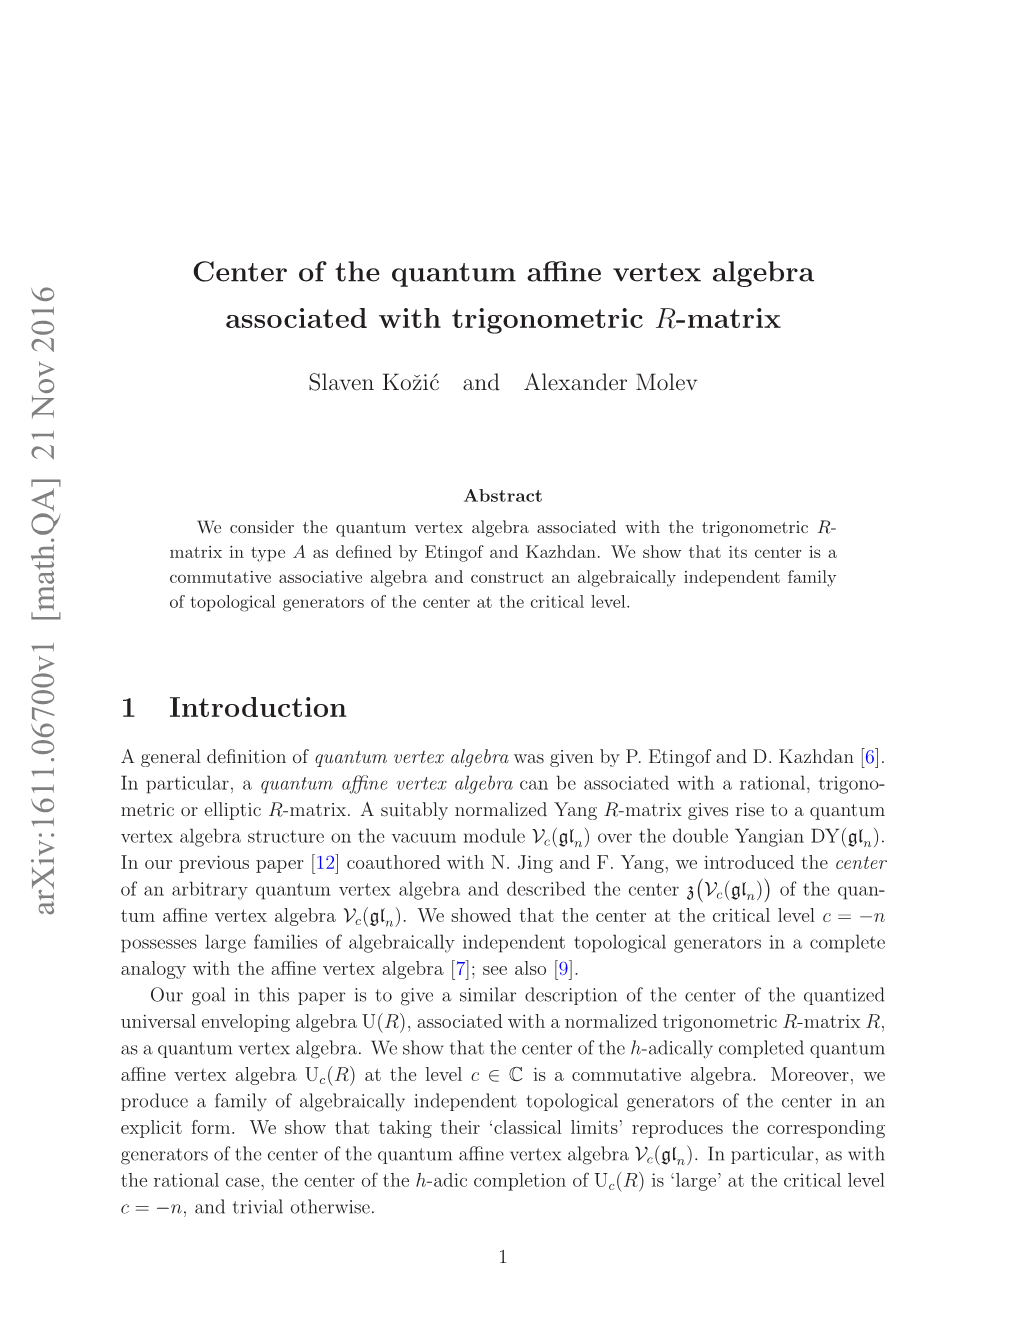 Center of the Quantum Affine Vertex Algebra Associated with Trigonometric R-Matrix